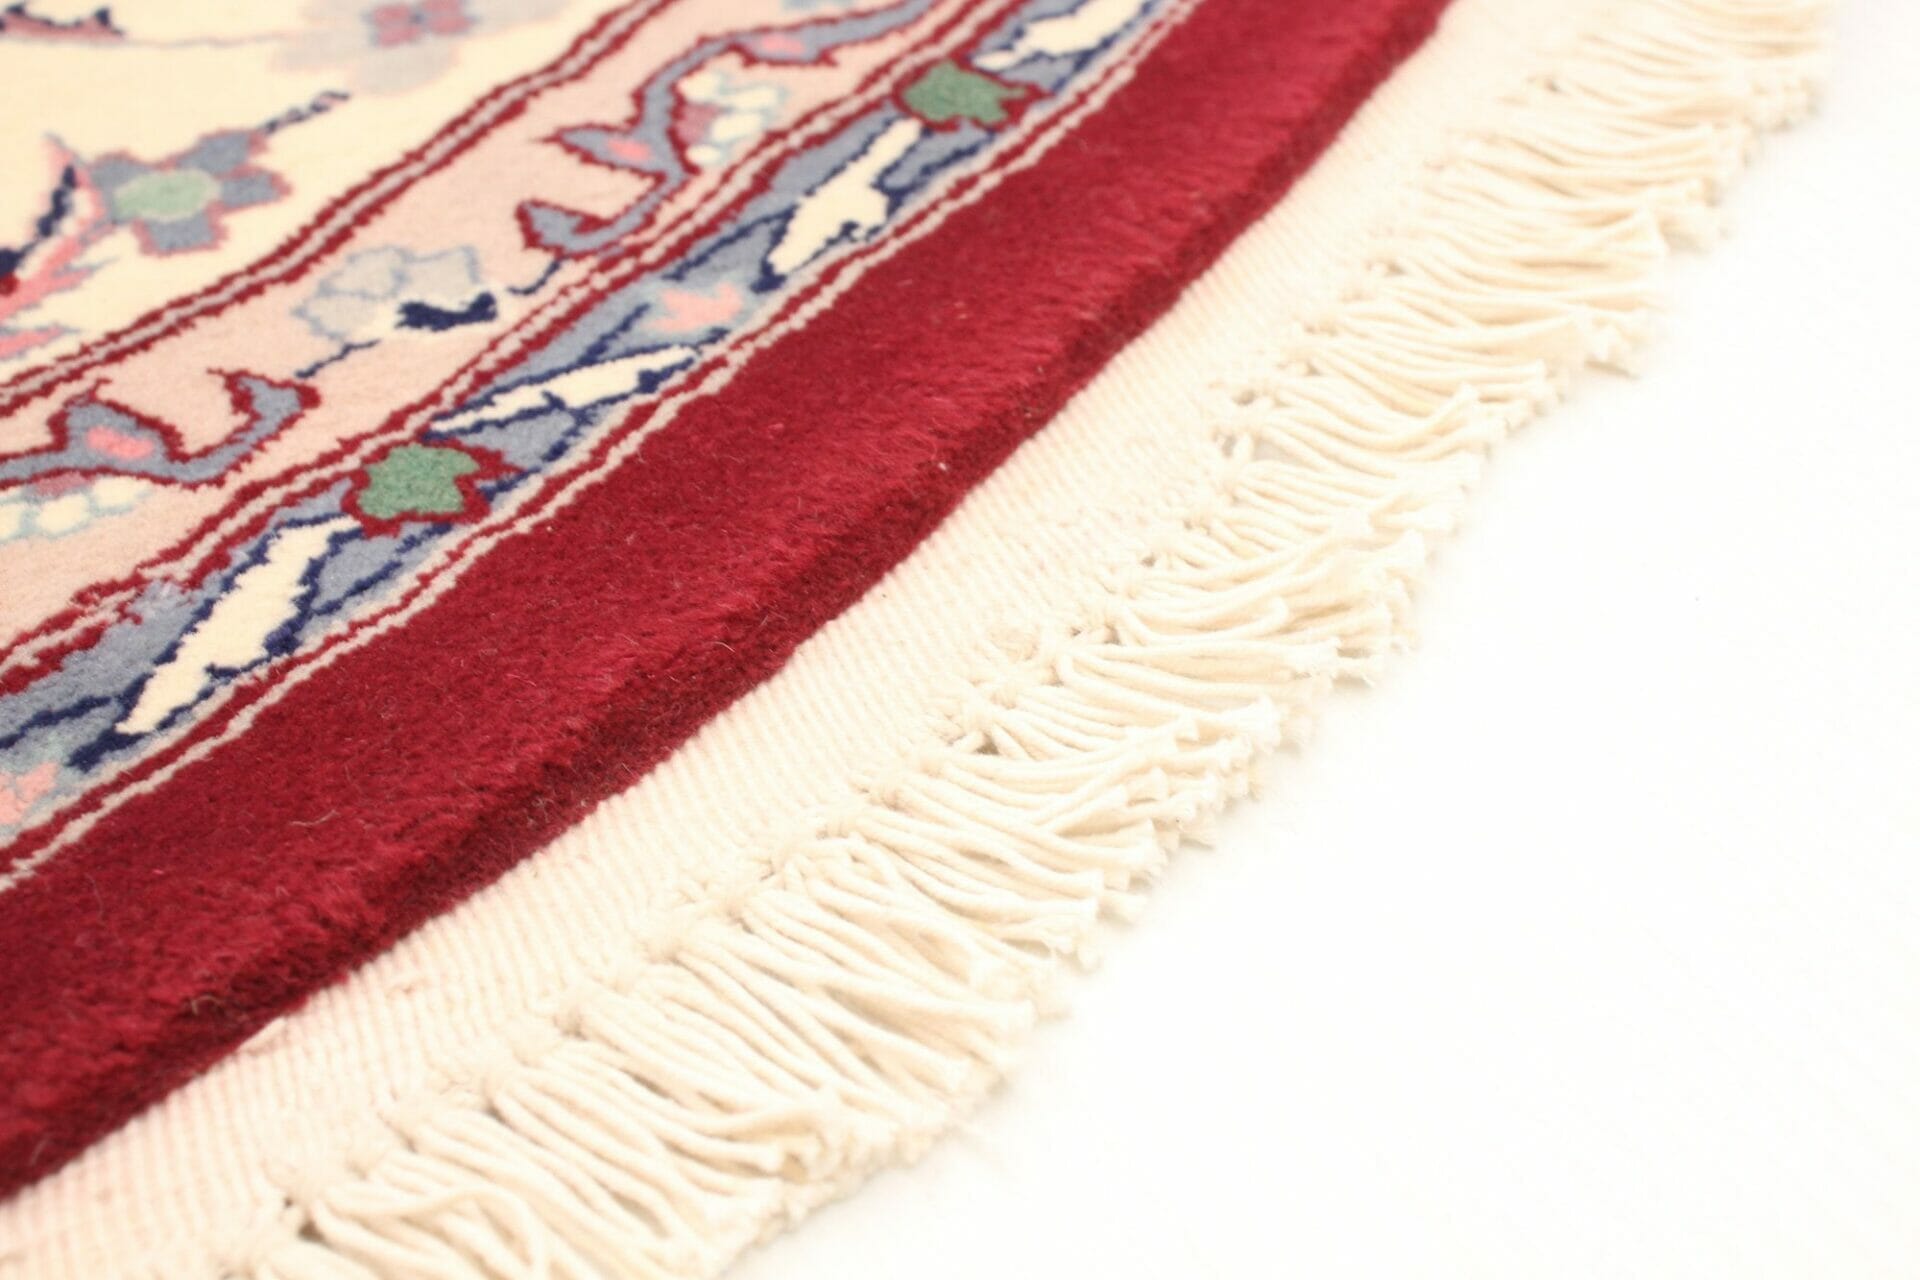 Een close up van een rood en wit vloerkleed met franjes.